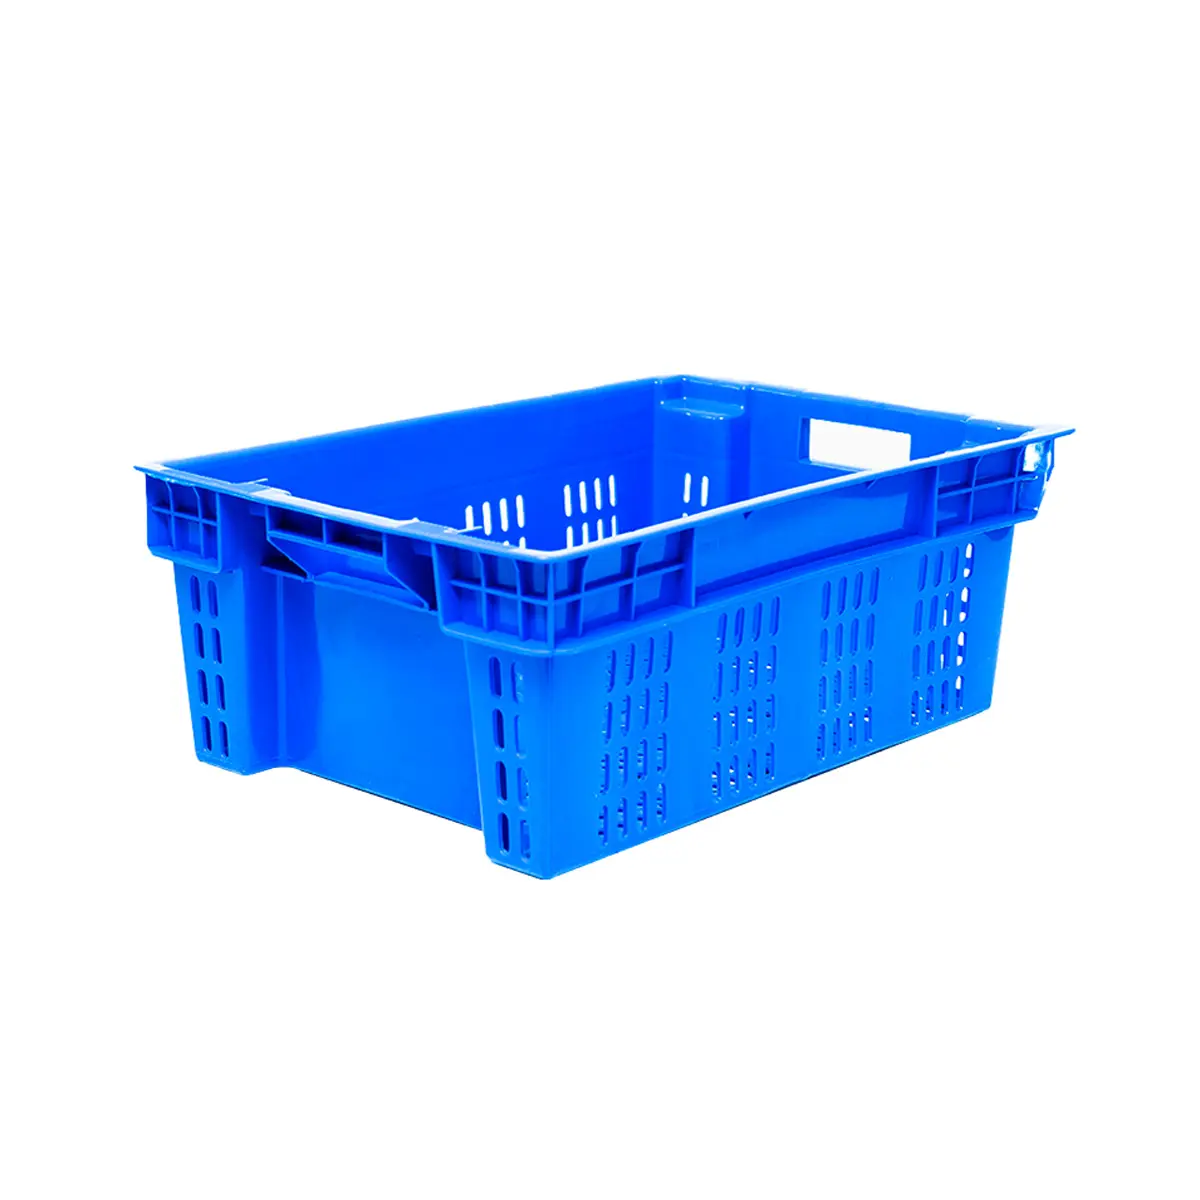 El contenedor de caja de plástico confiable es universal 600x400x200mm diseño de apilamiento cónico al por mayor